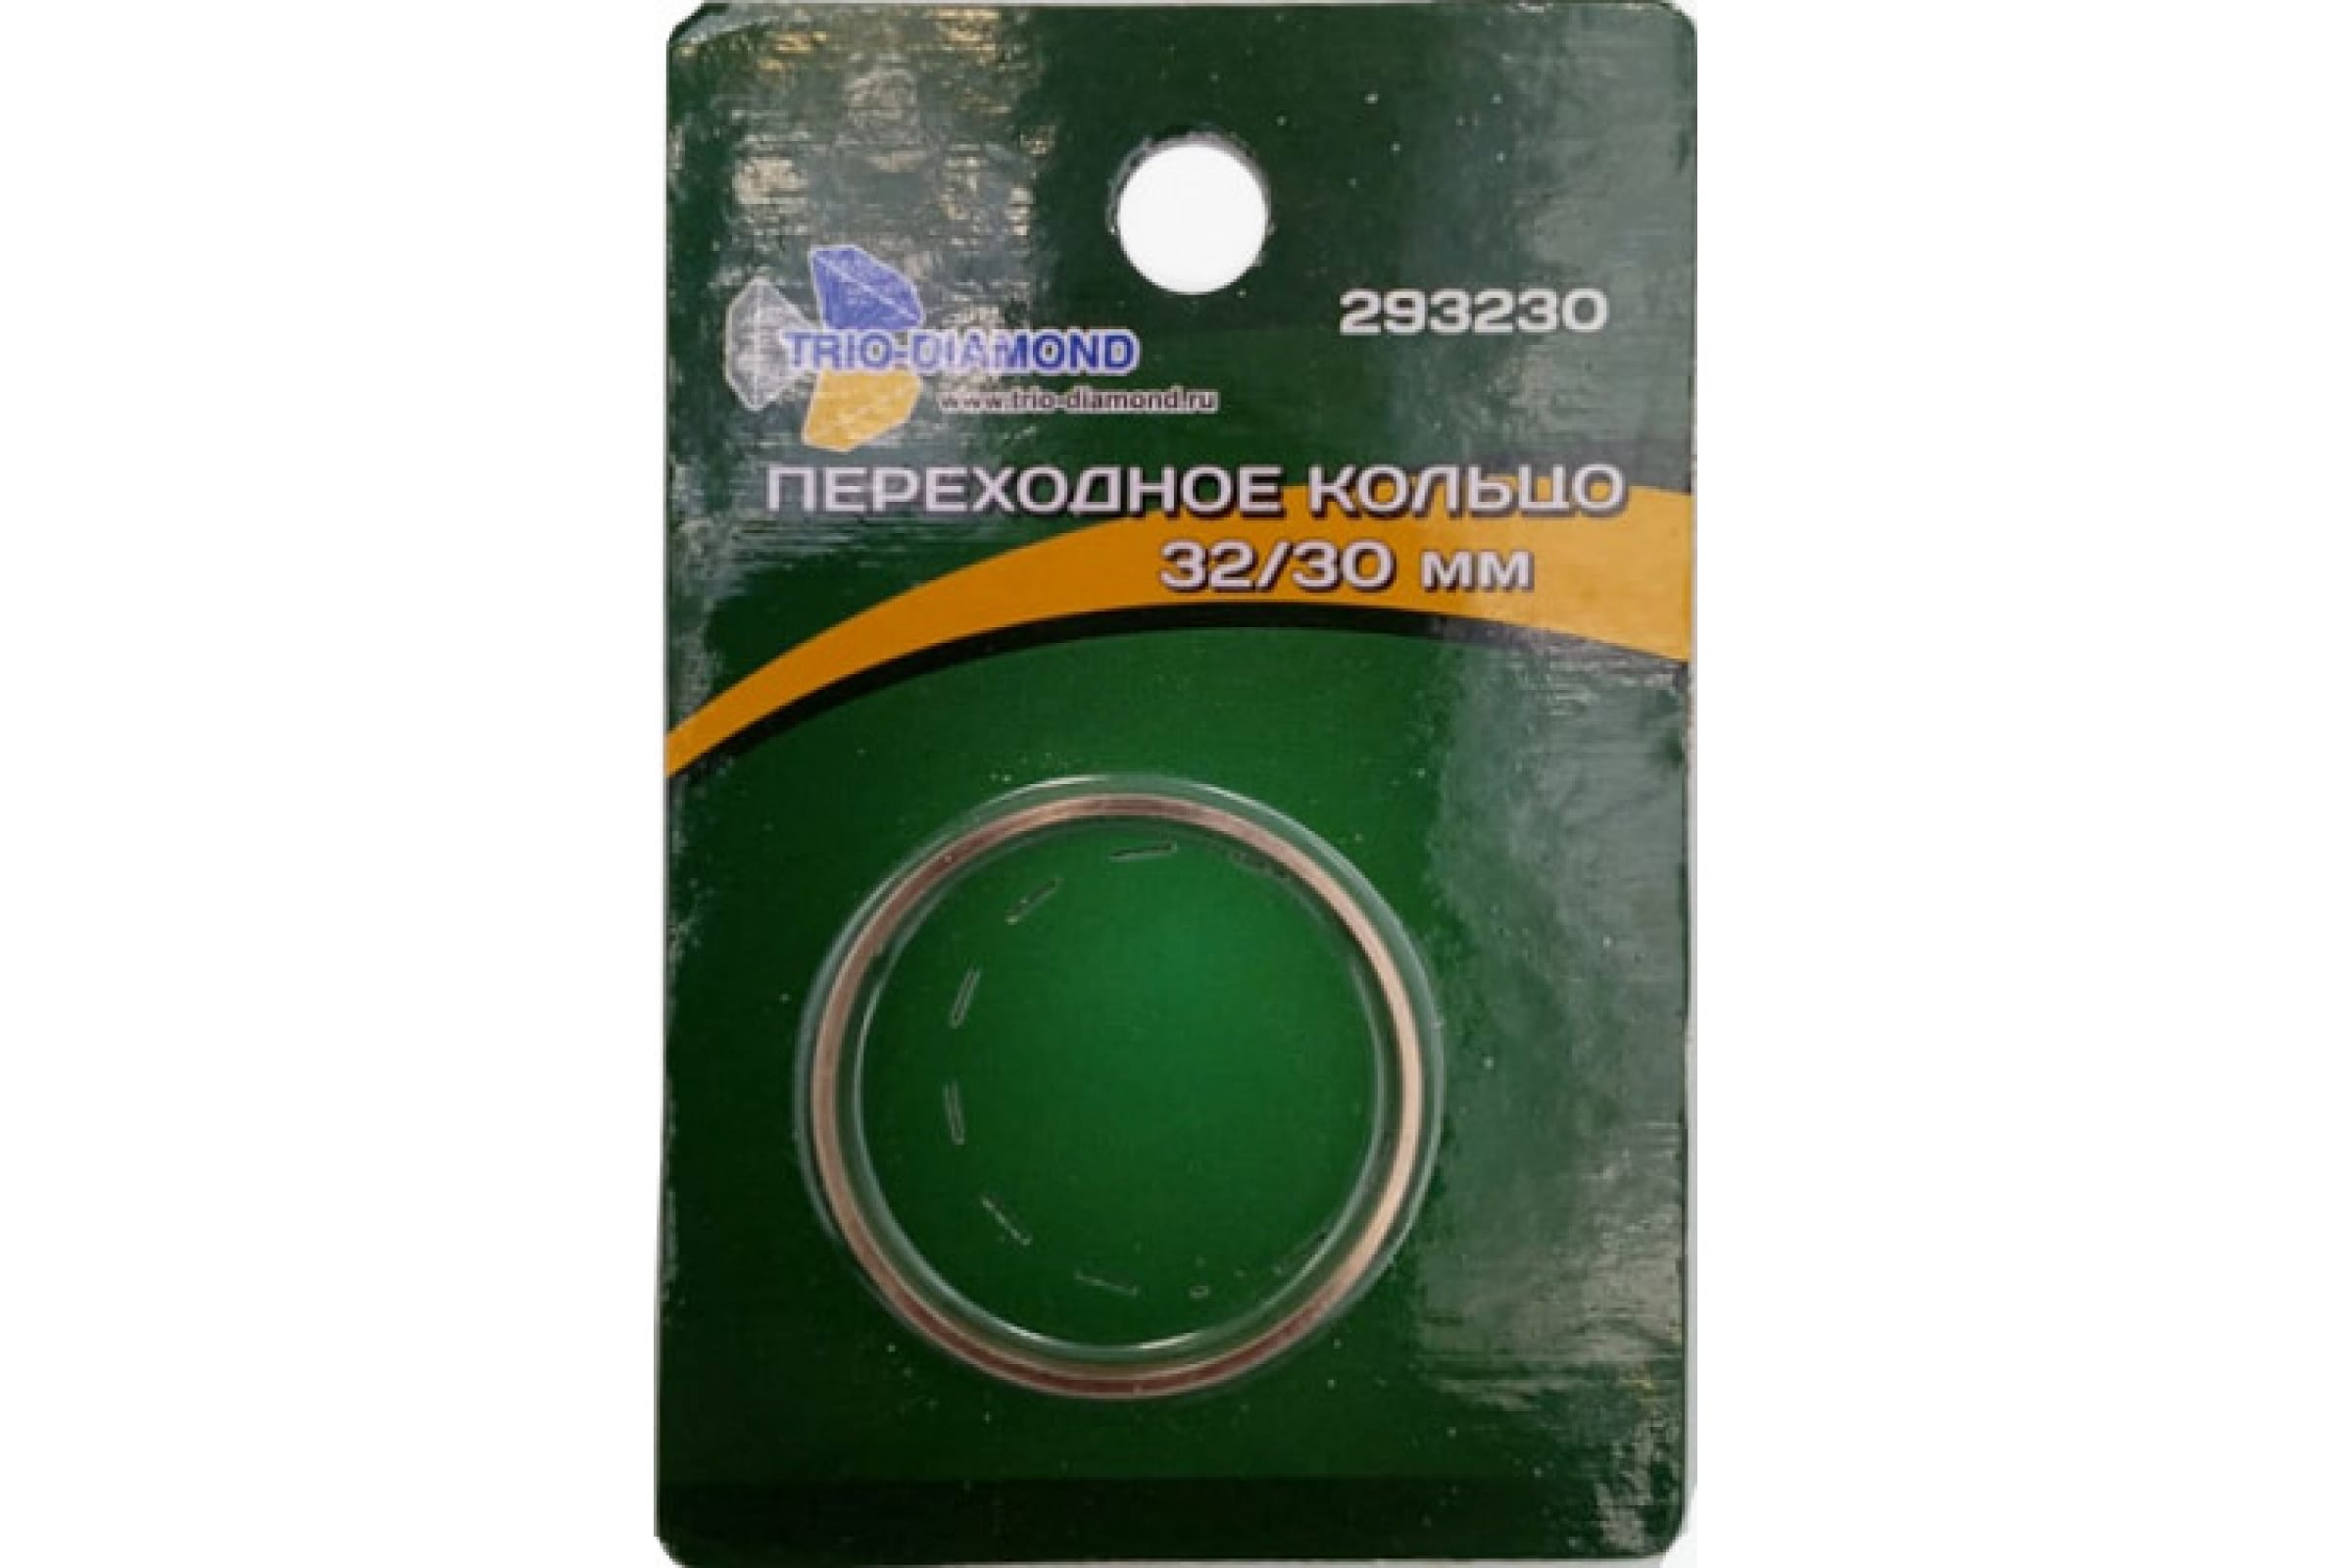 TRIO-DIAMOND Кольцо переходное 32/30 293230 переходное кольцо general fittings